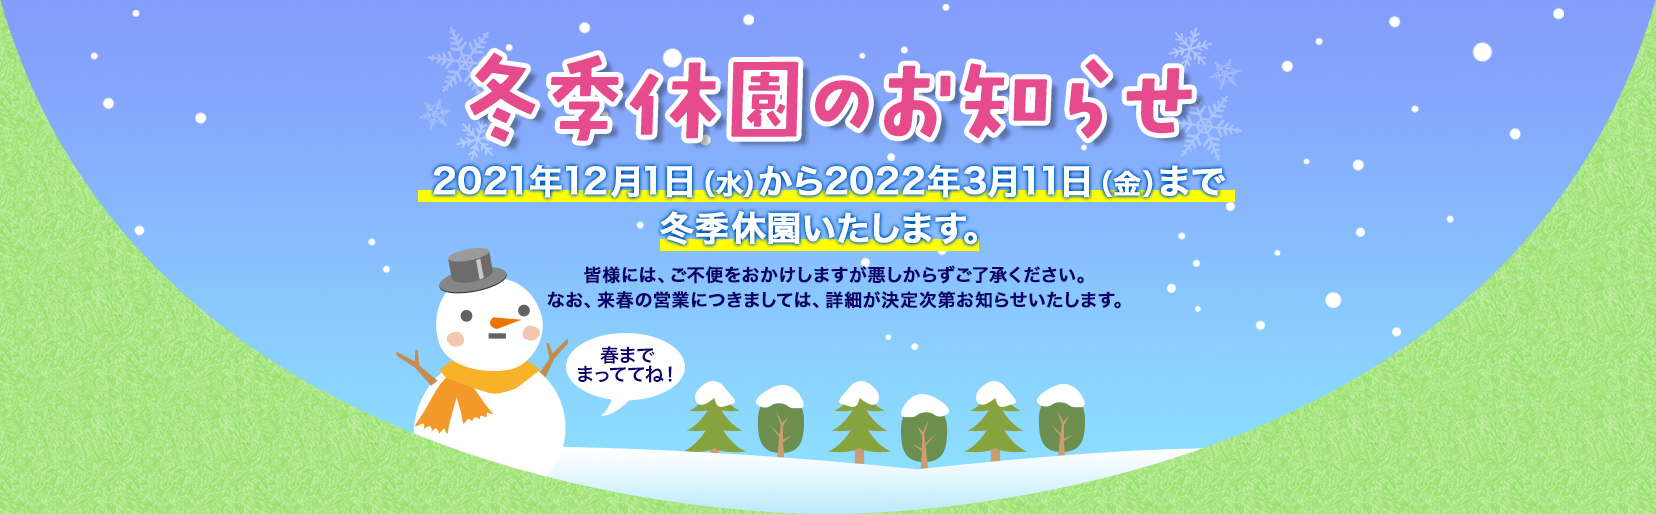 冬期休園のお知らせ 2021年12月1日(水)から2022年3月中旬ごろまで冬季休園いたします。